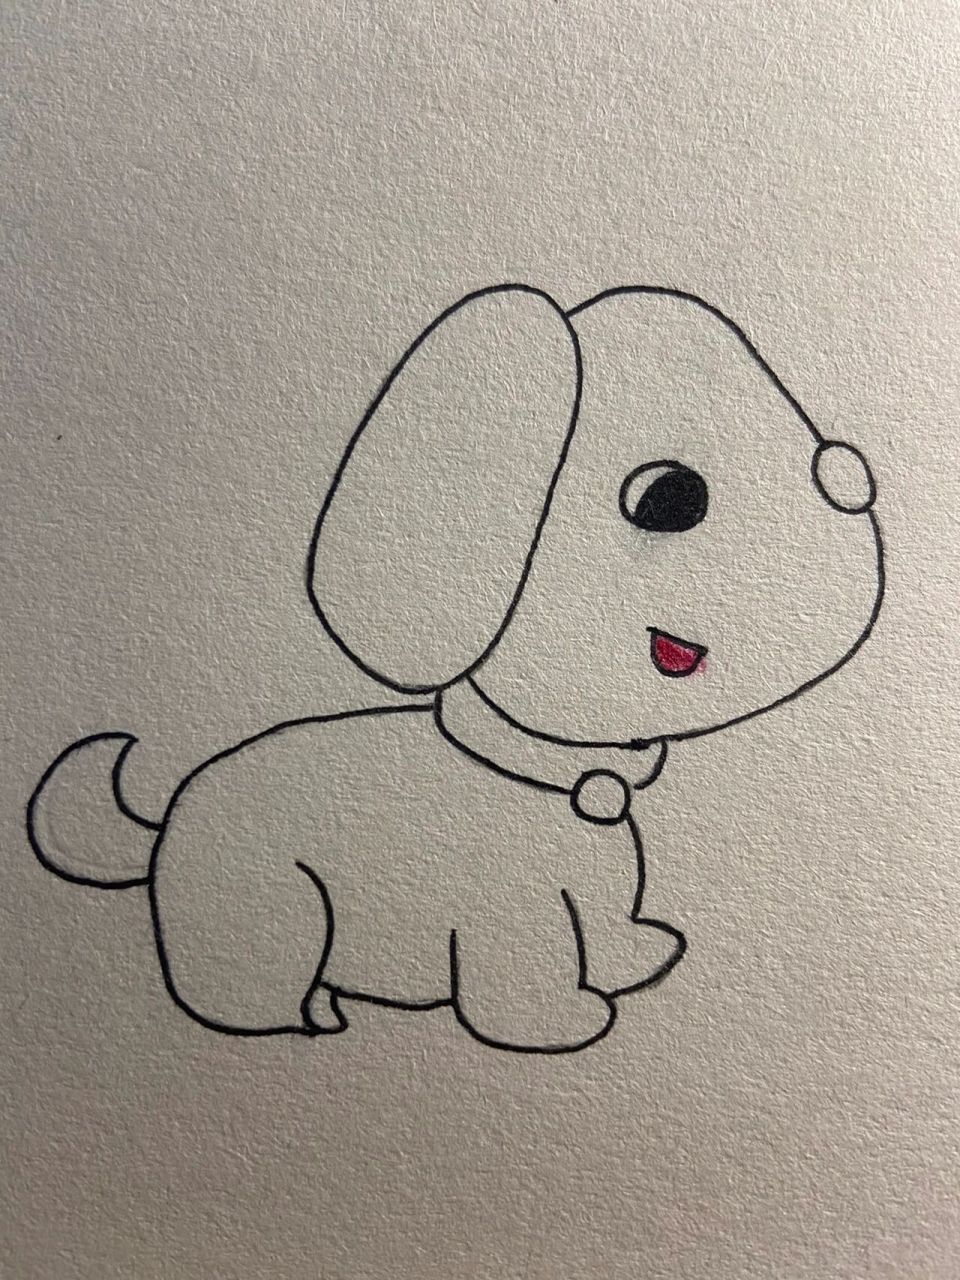 小学三年级简笔画小狗图片